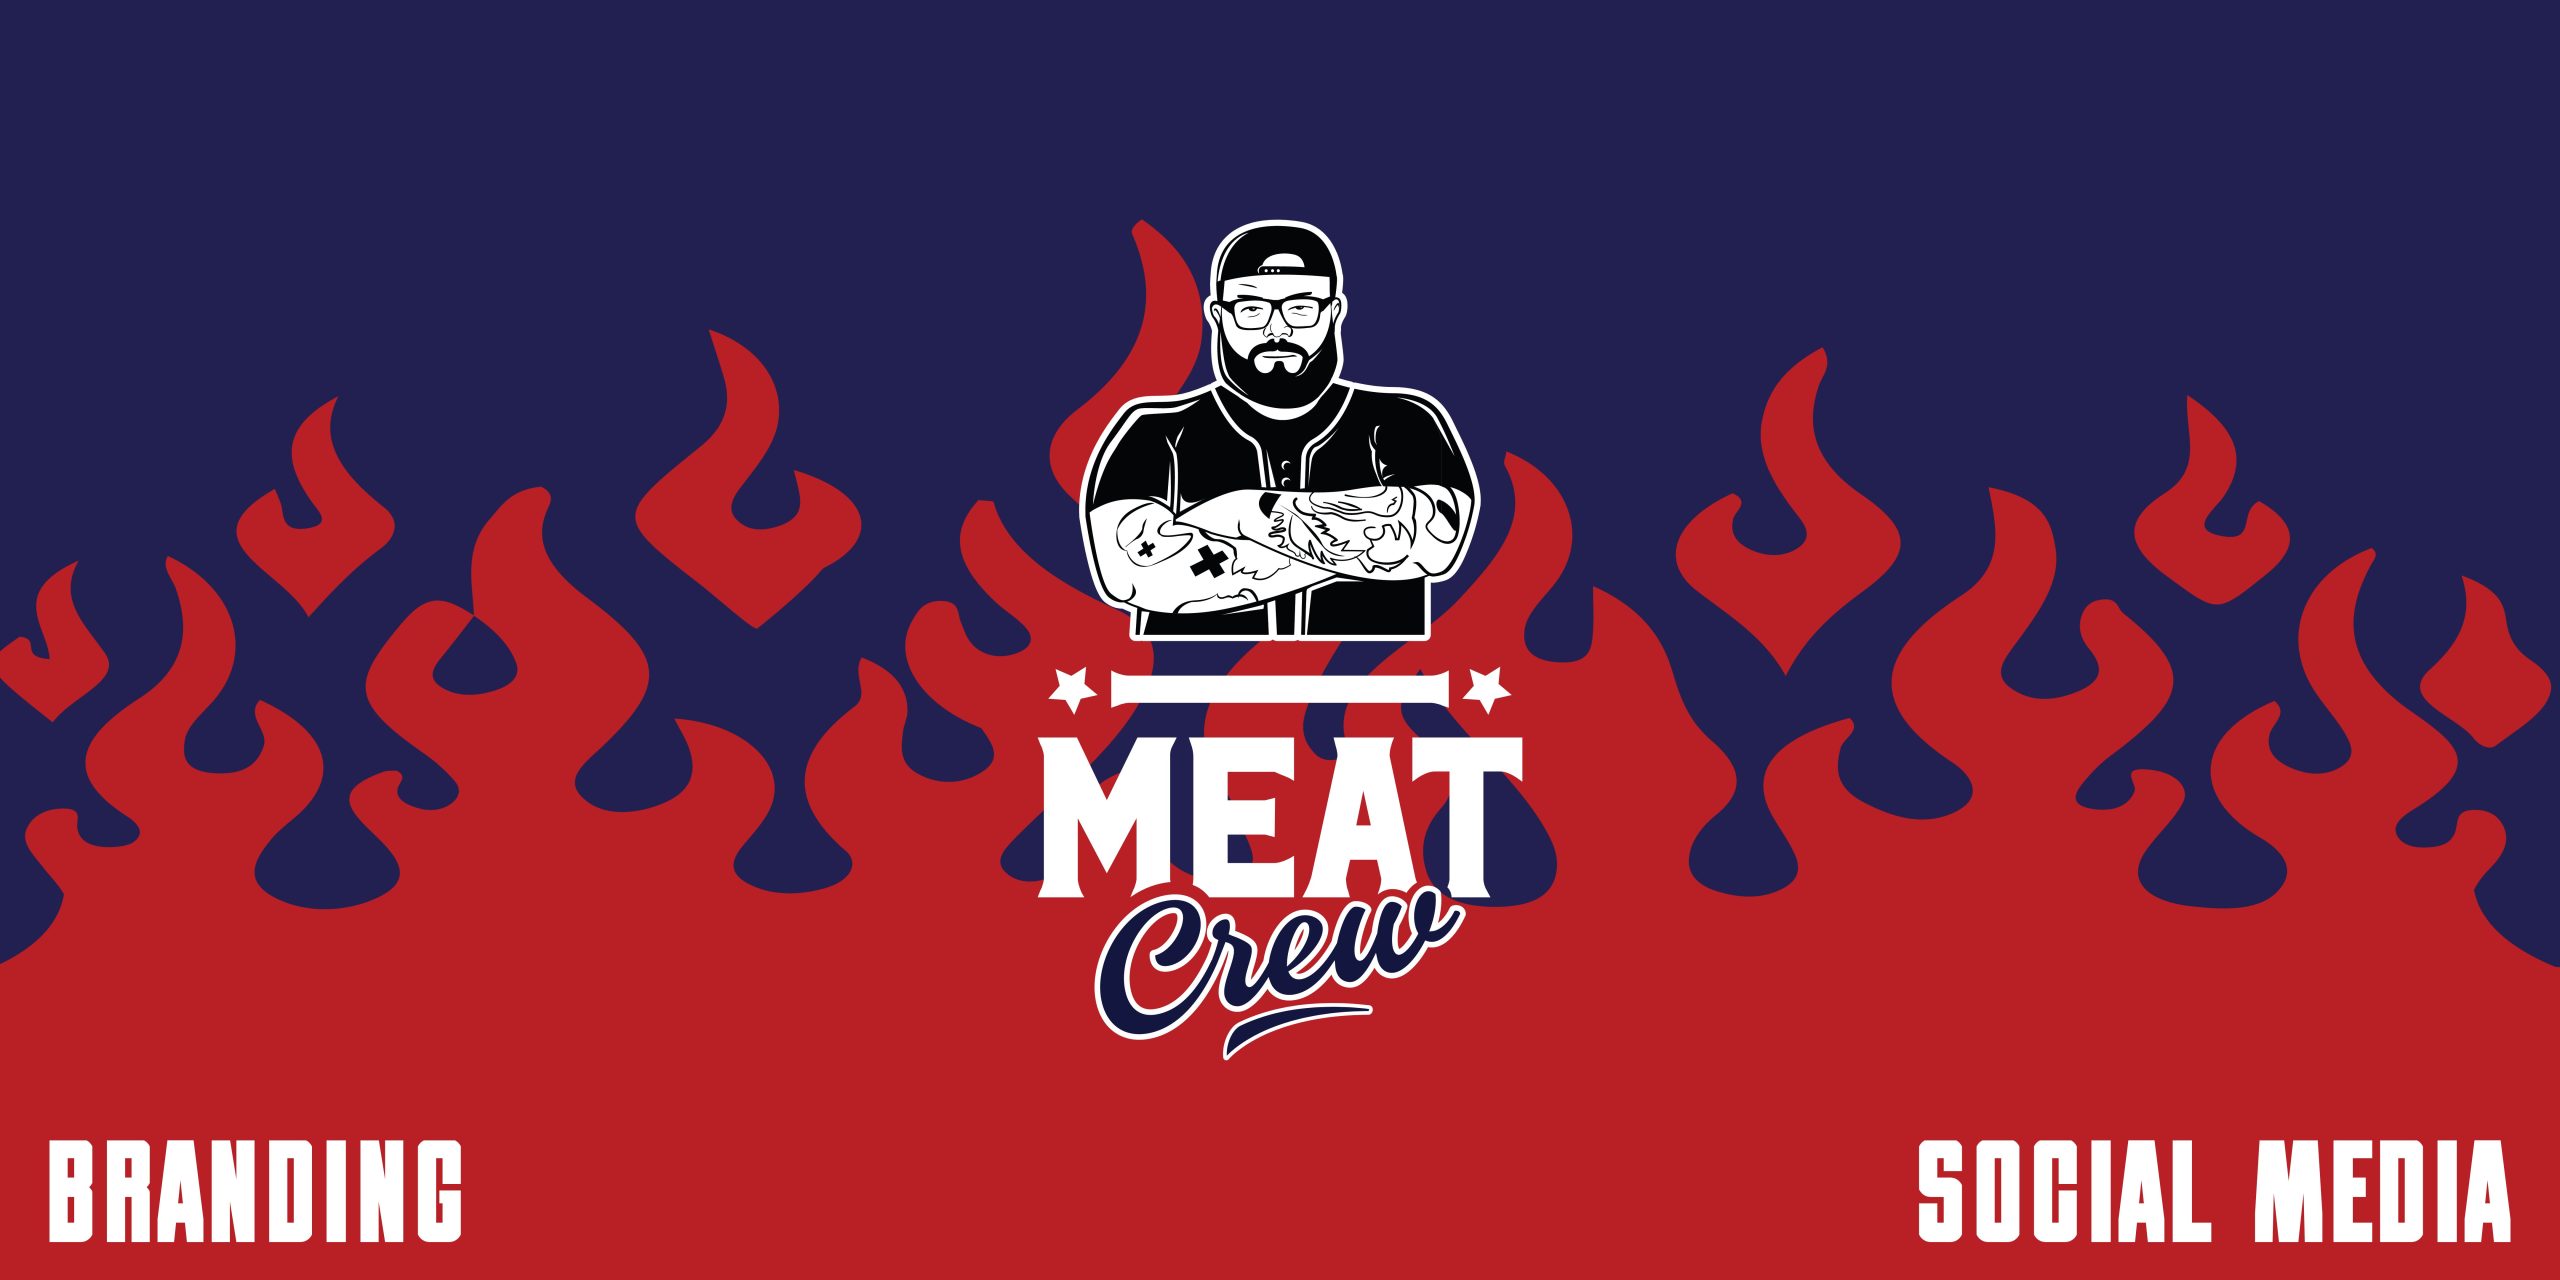 MEAT CREW